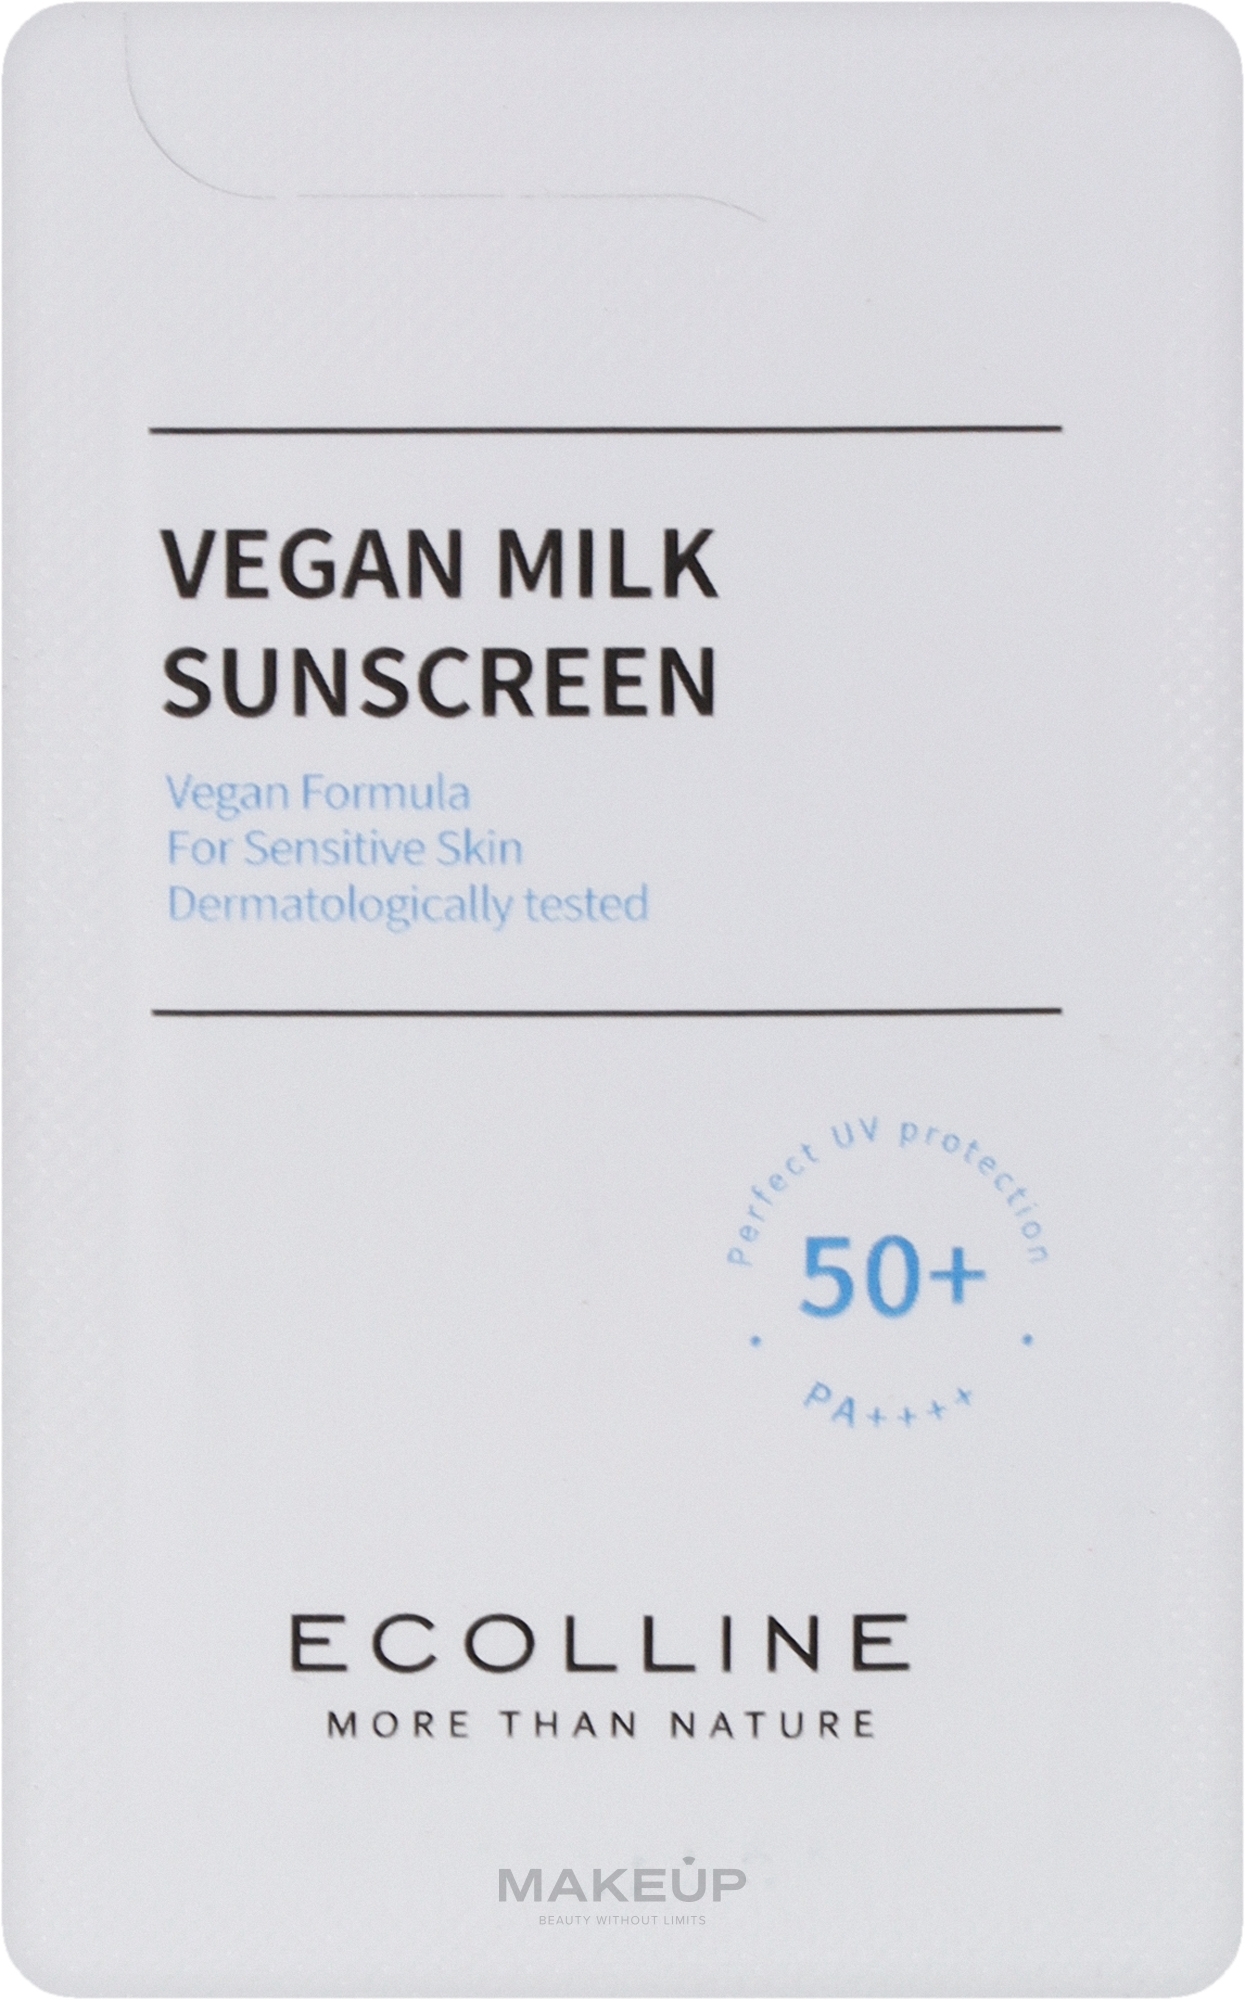 Веганське сонцезахисне молочко для обличчя й тіла - Vegan Milk Sunscreen 50+, PA++++ (пробник) — фото 1ml